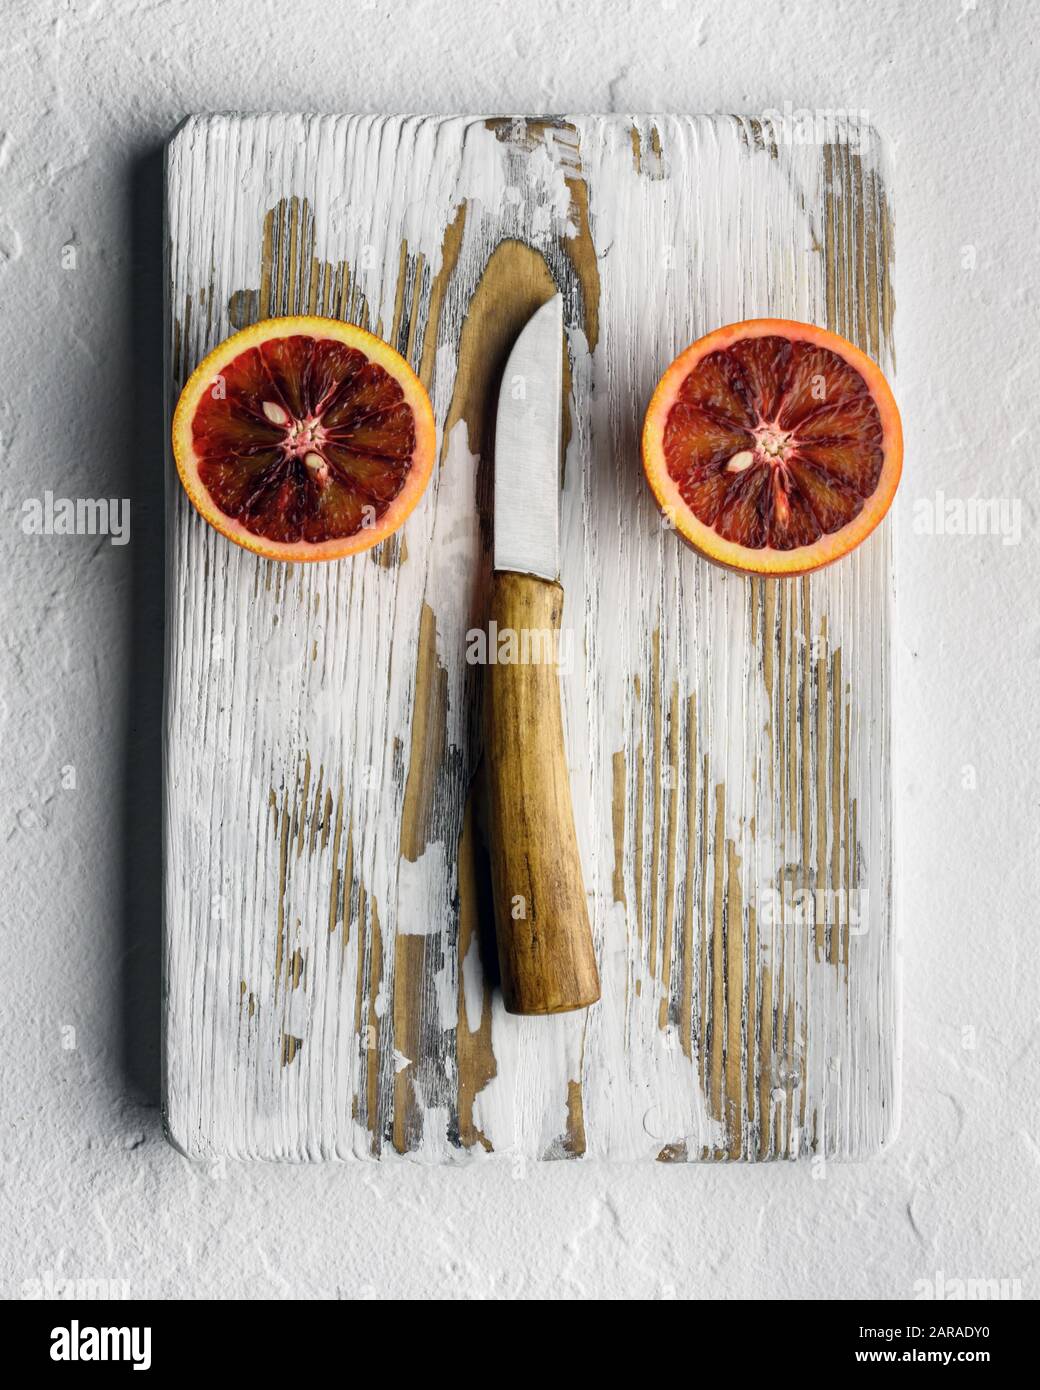 Demi-pièces orange avec couteau sur planche en bois blanche. Concept sain de vitamine de régime. Photographie alimentaire Banque D'Images